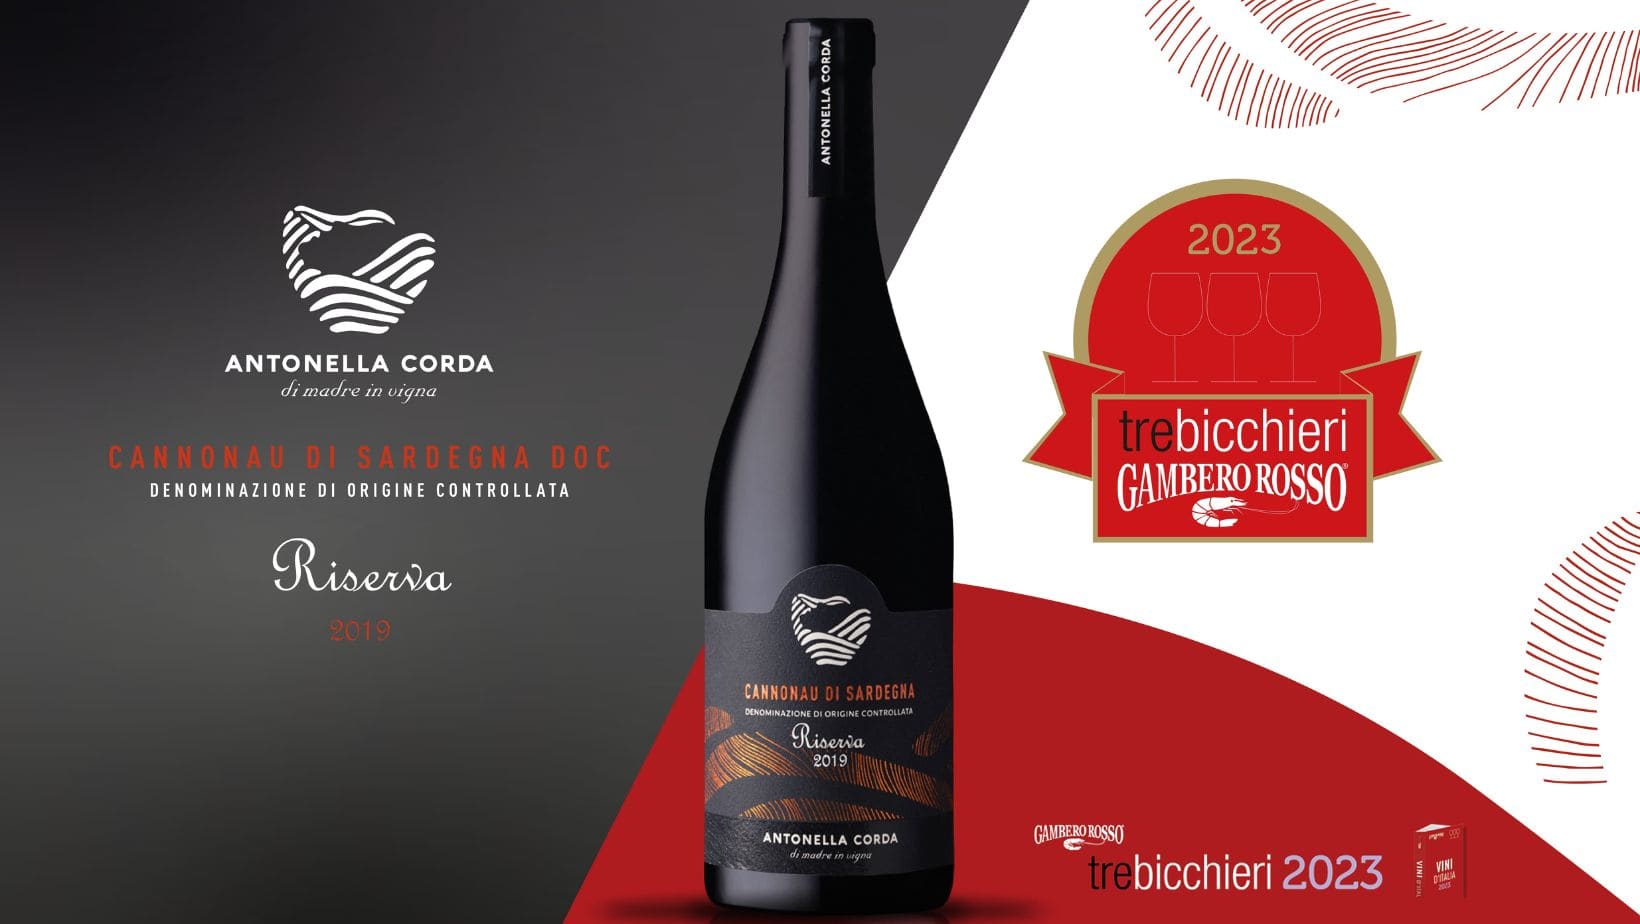 Il Cannonau di Sardegna DOC Riserva 2019 premiato con i “3 Bicchieri” del Gambero Rosso.